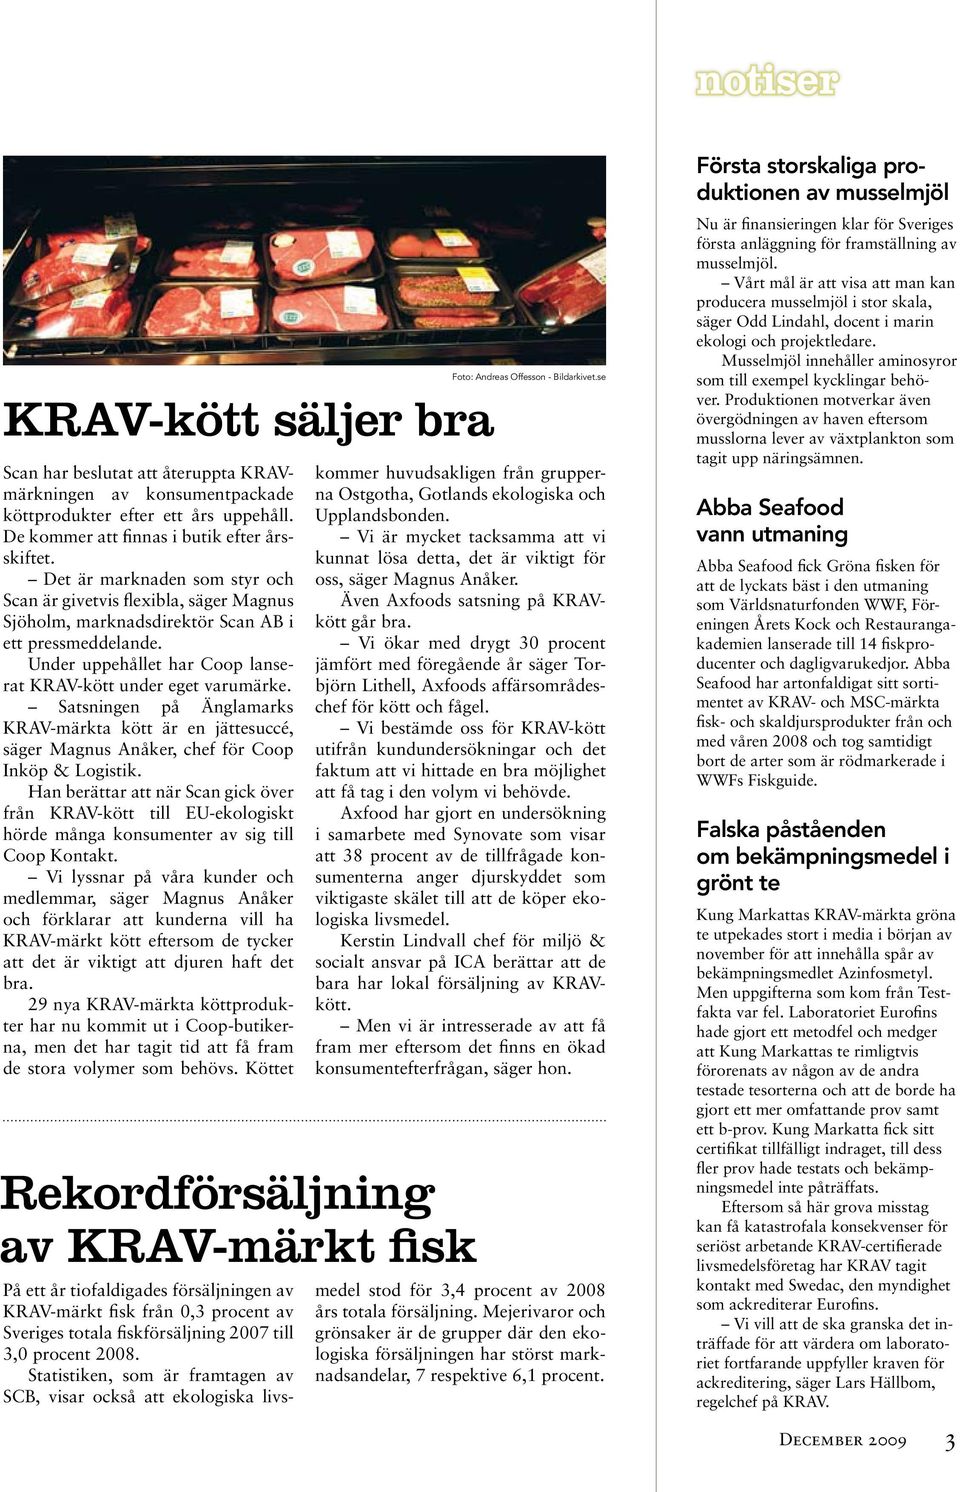 Satsningen på Änglamarks KRAV-märkta kött är en jättesuccé, säger Magnus Anåker, chef för Coop Inköp & Logistik.